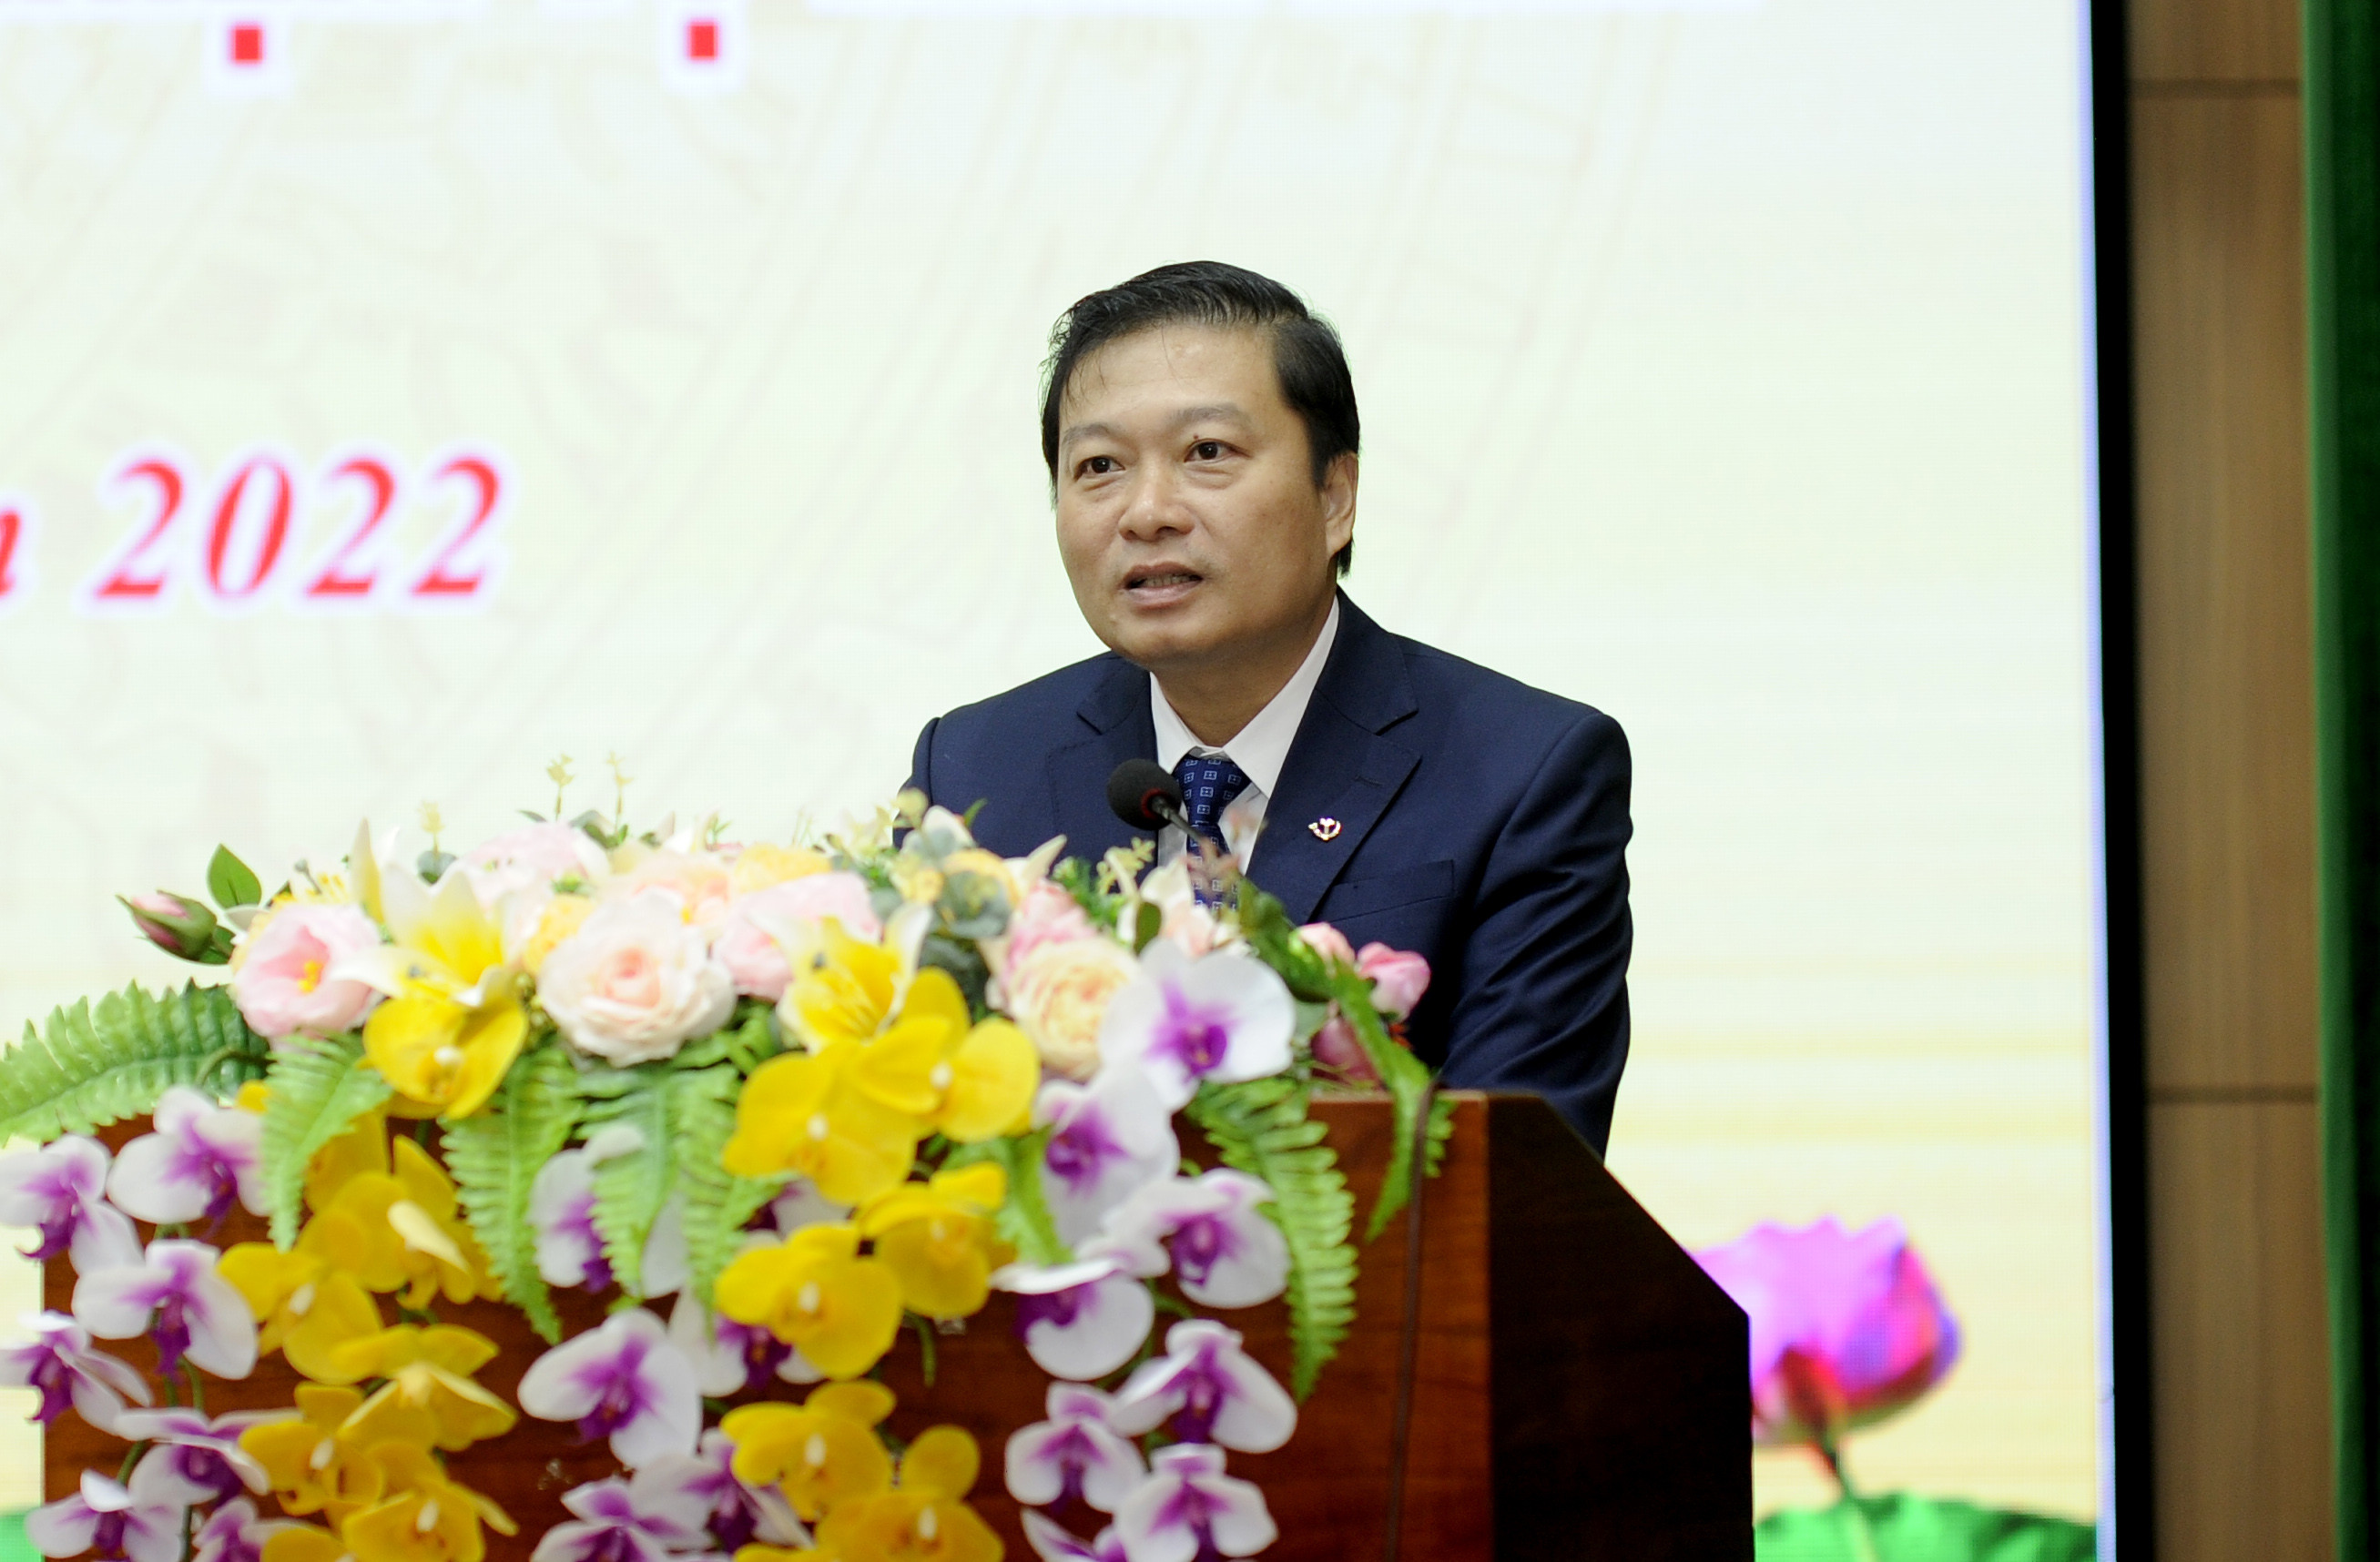 Đồng chí Lê Hồng Vinh - Ủy viên BTV Tỉnh ủy, Phó Chủ tịch UBND tỉnh Nghệ An ghi nhận sự nỗ lực của Kho bạc Nhà nước Nghệ An trong năm 2021. Ảnh: Quang An